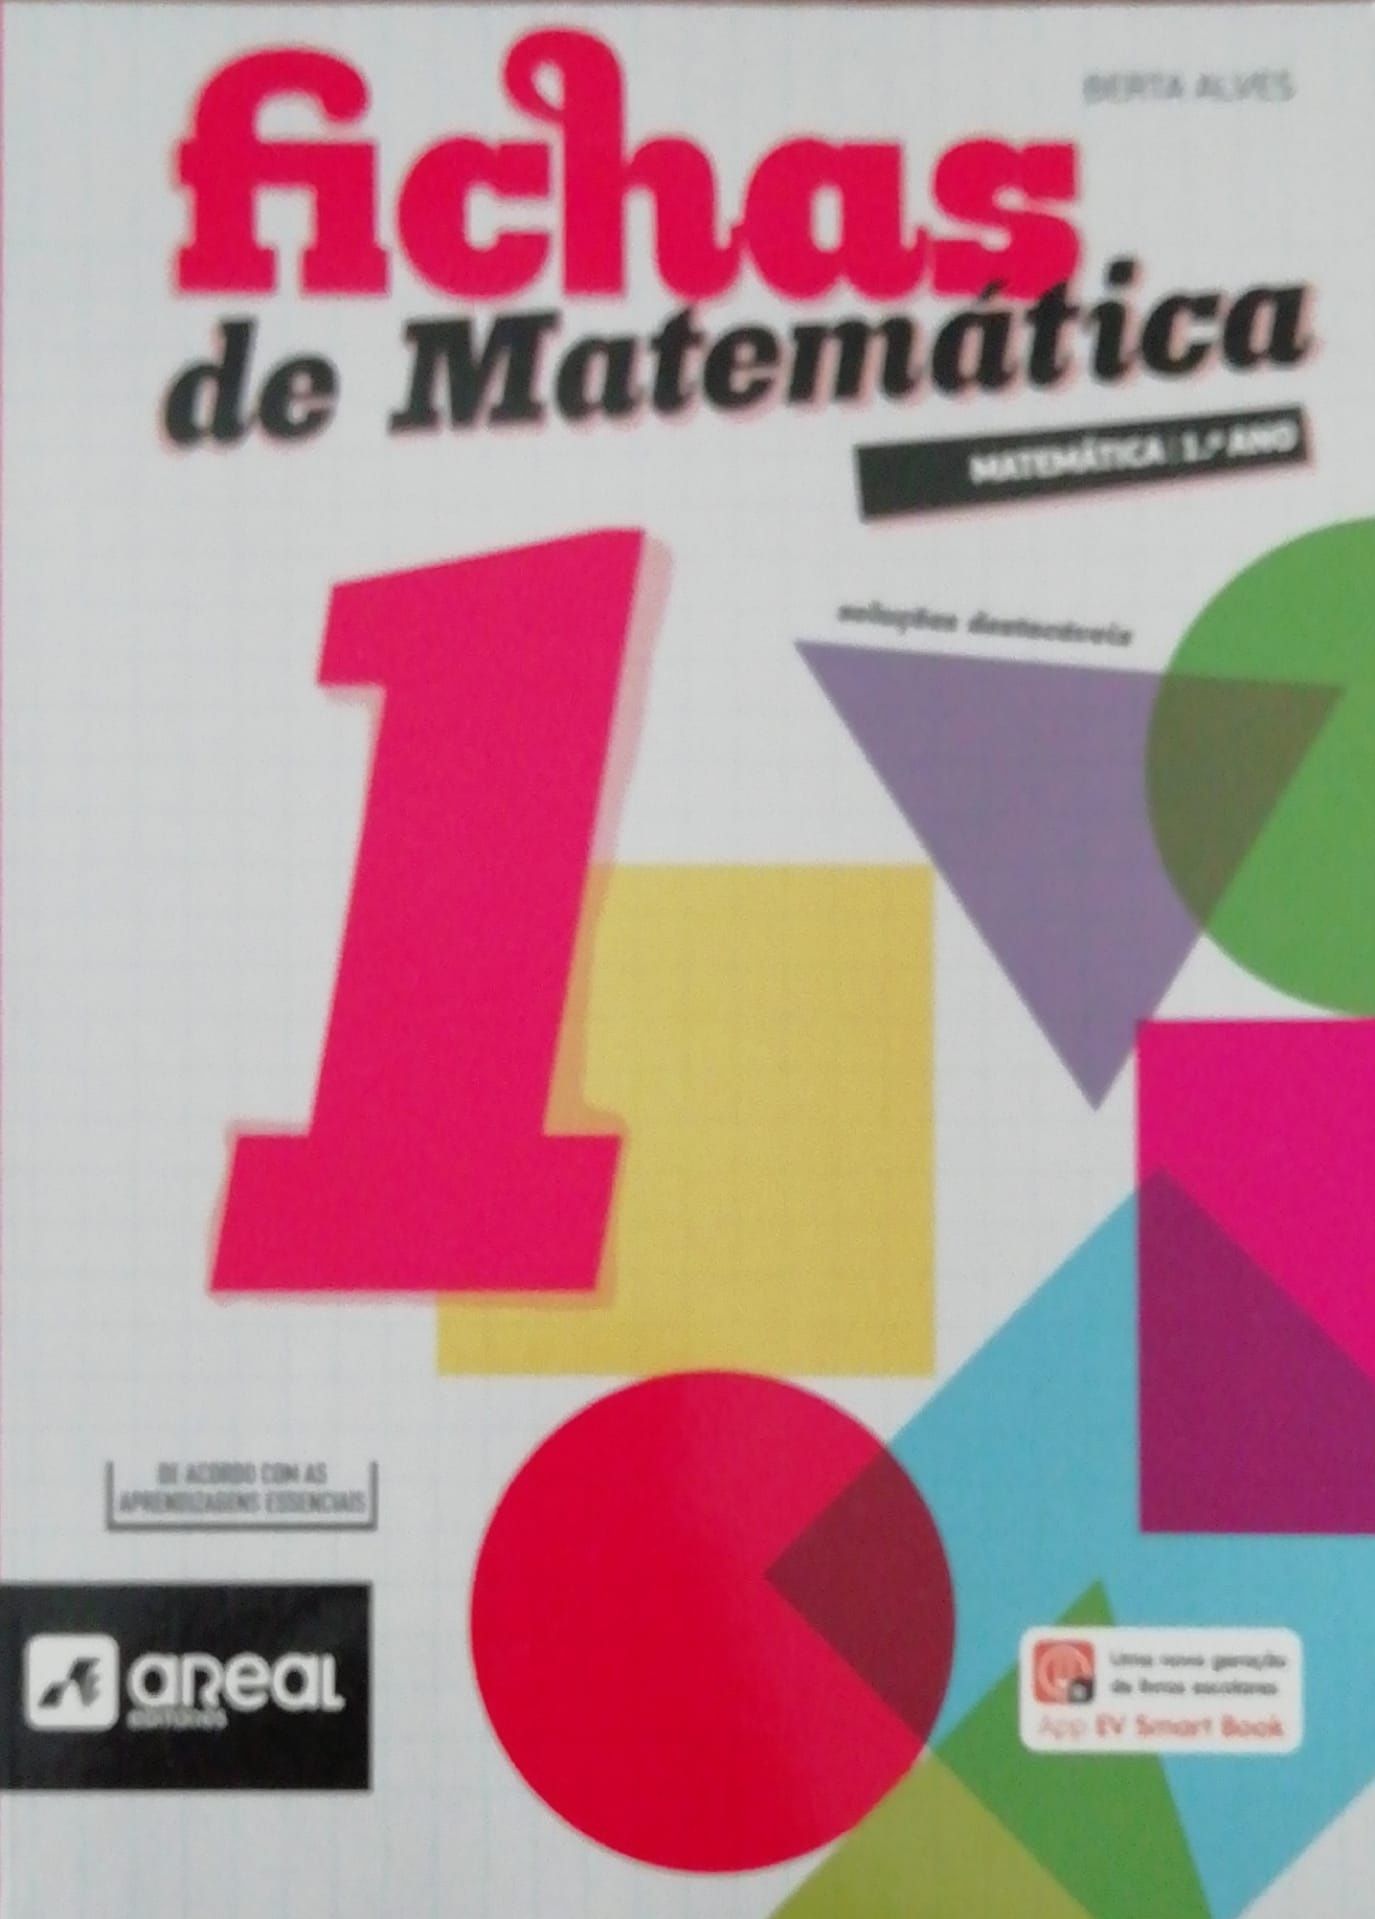 Livro escolar novo "Fichas de Matemática 1"